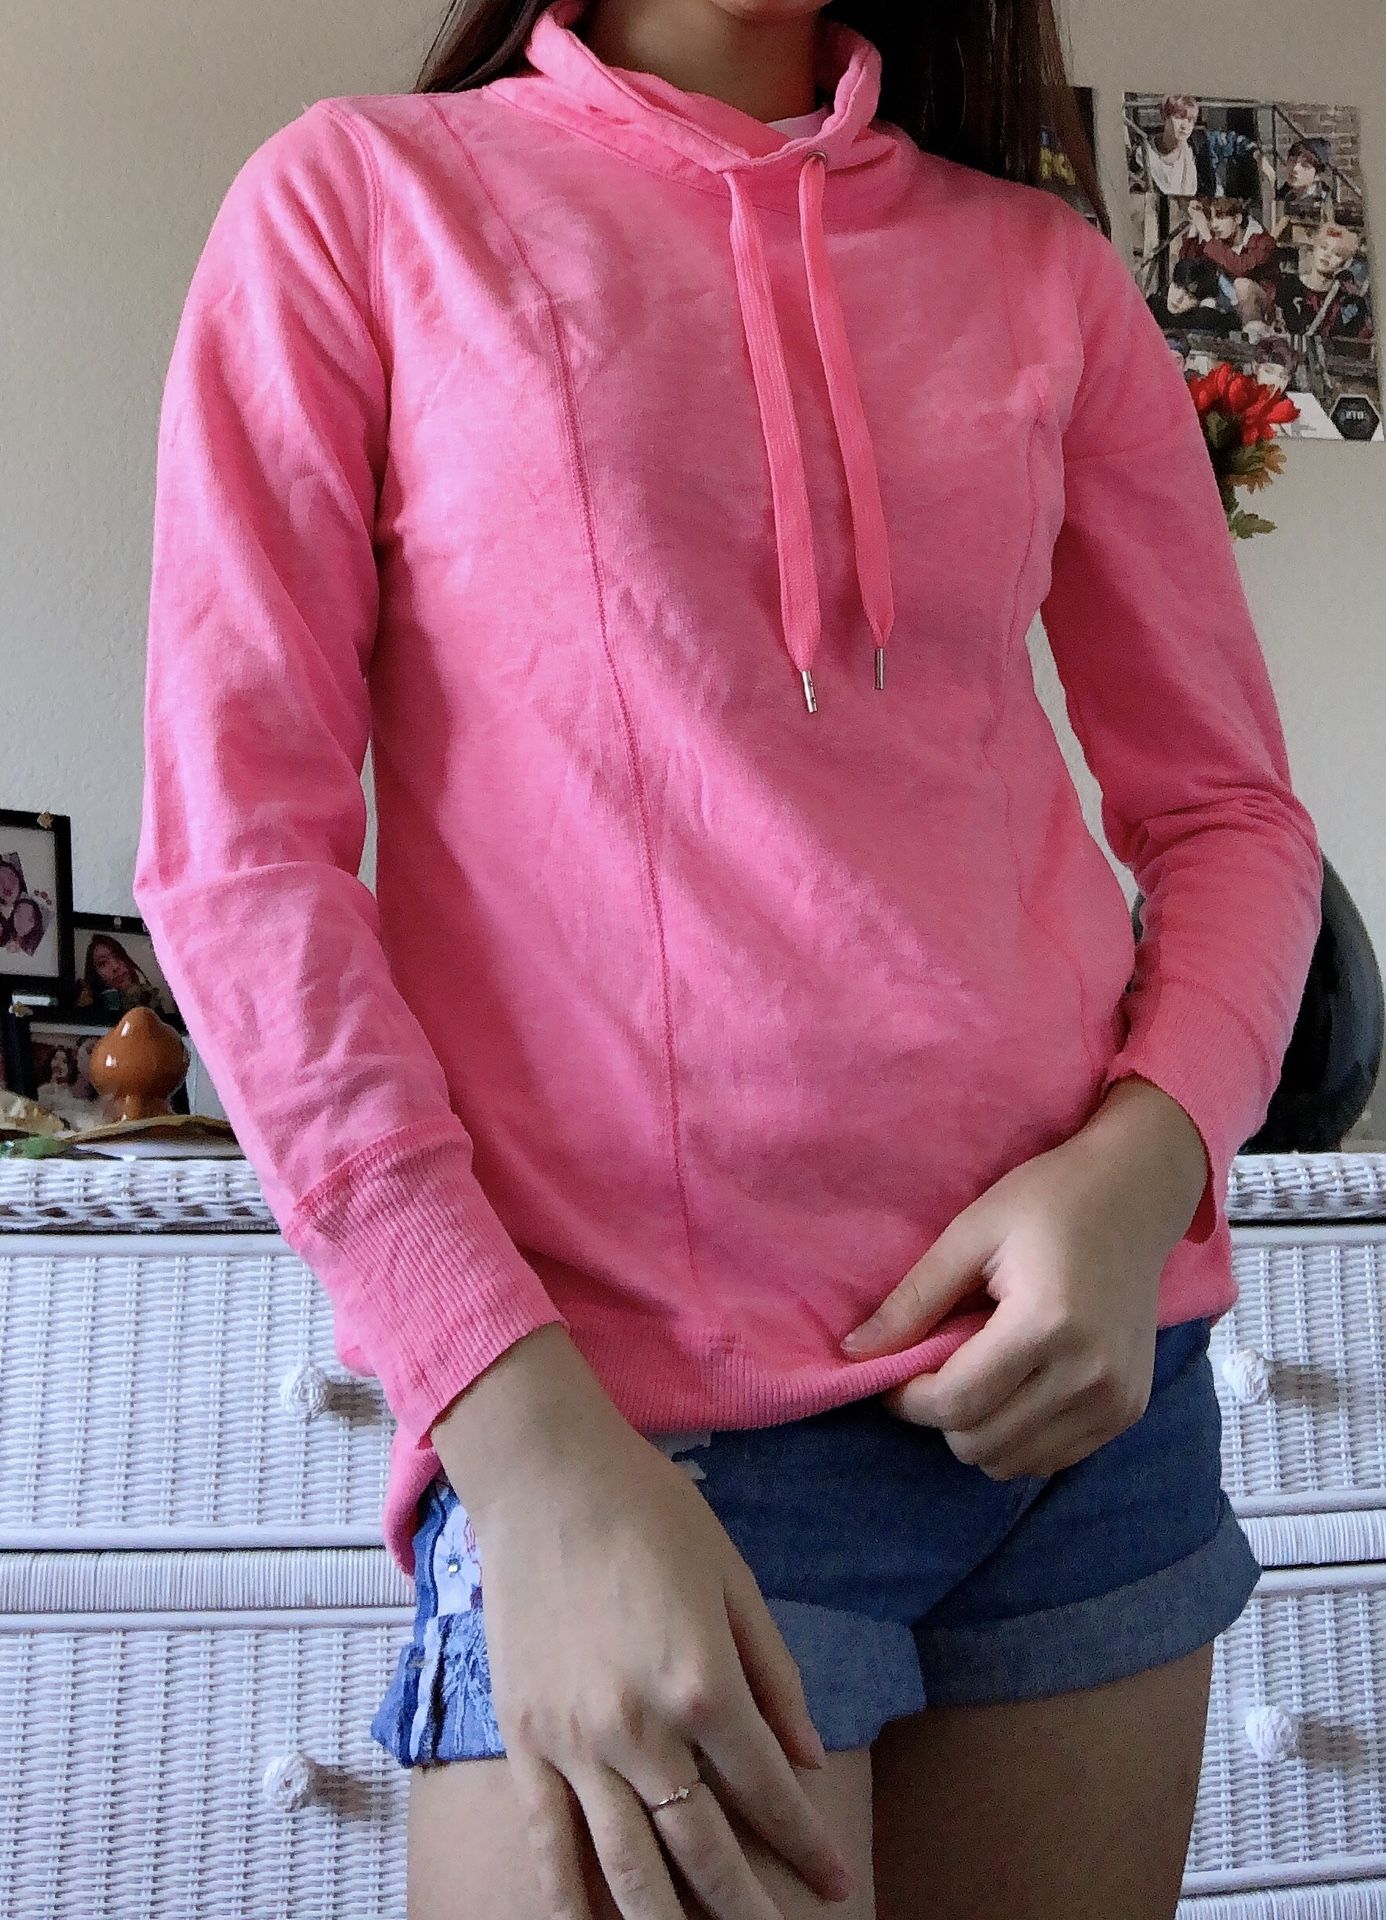 Hot pink lightweight workout sweatshirt